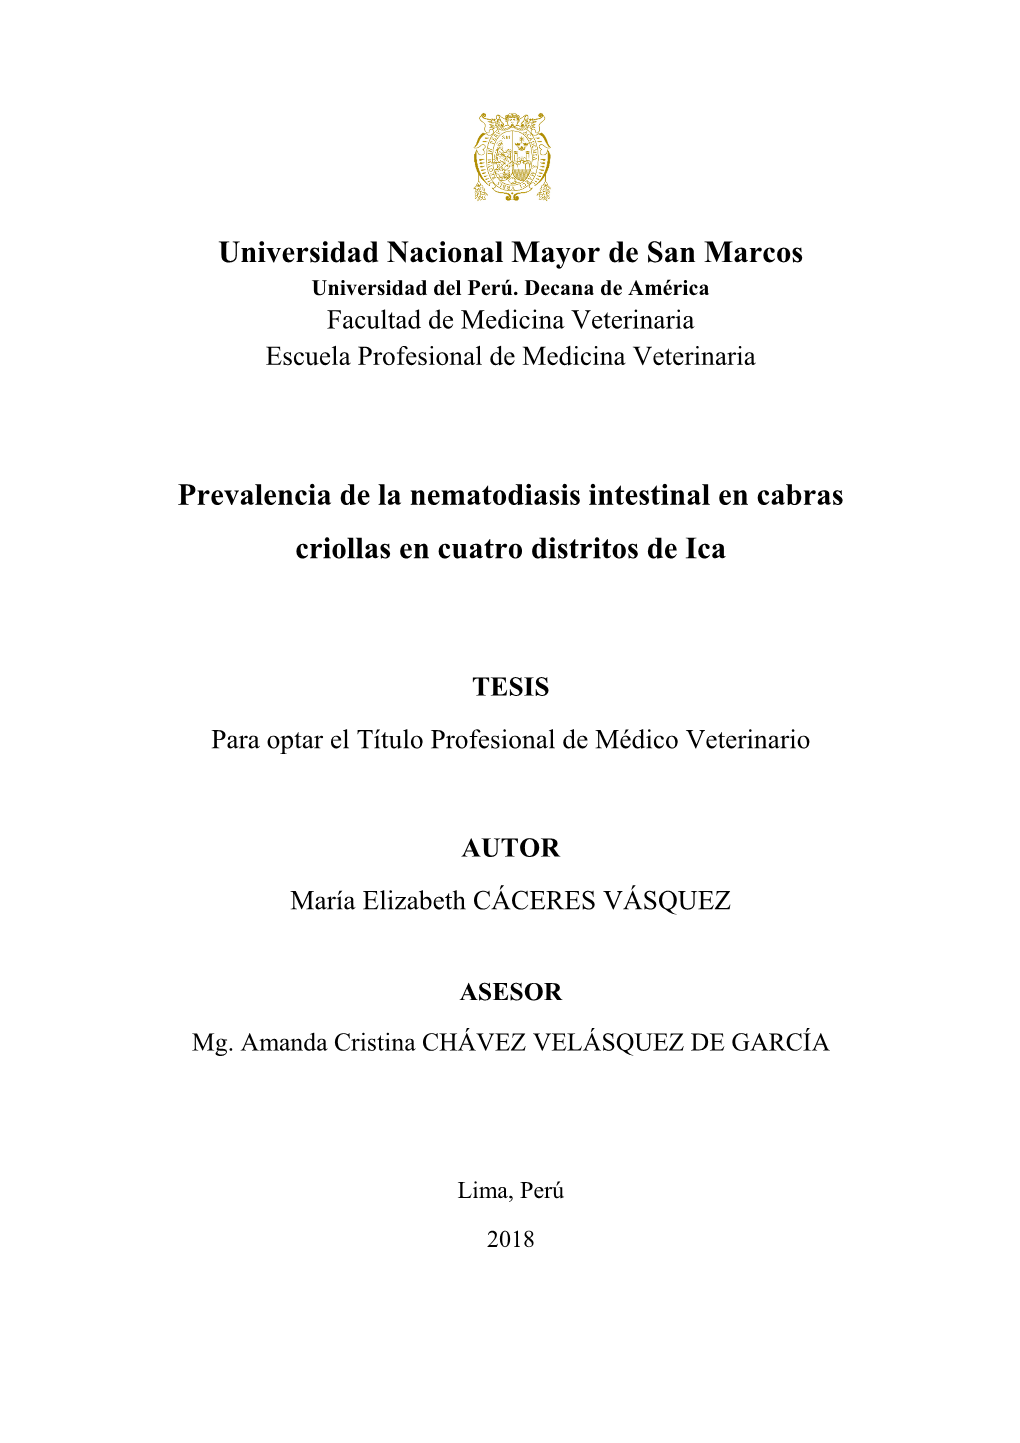 Universidad Nacional Mayor De San Marcos Prevalencia De La